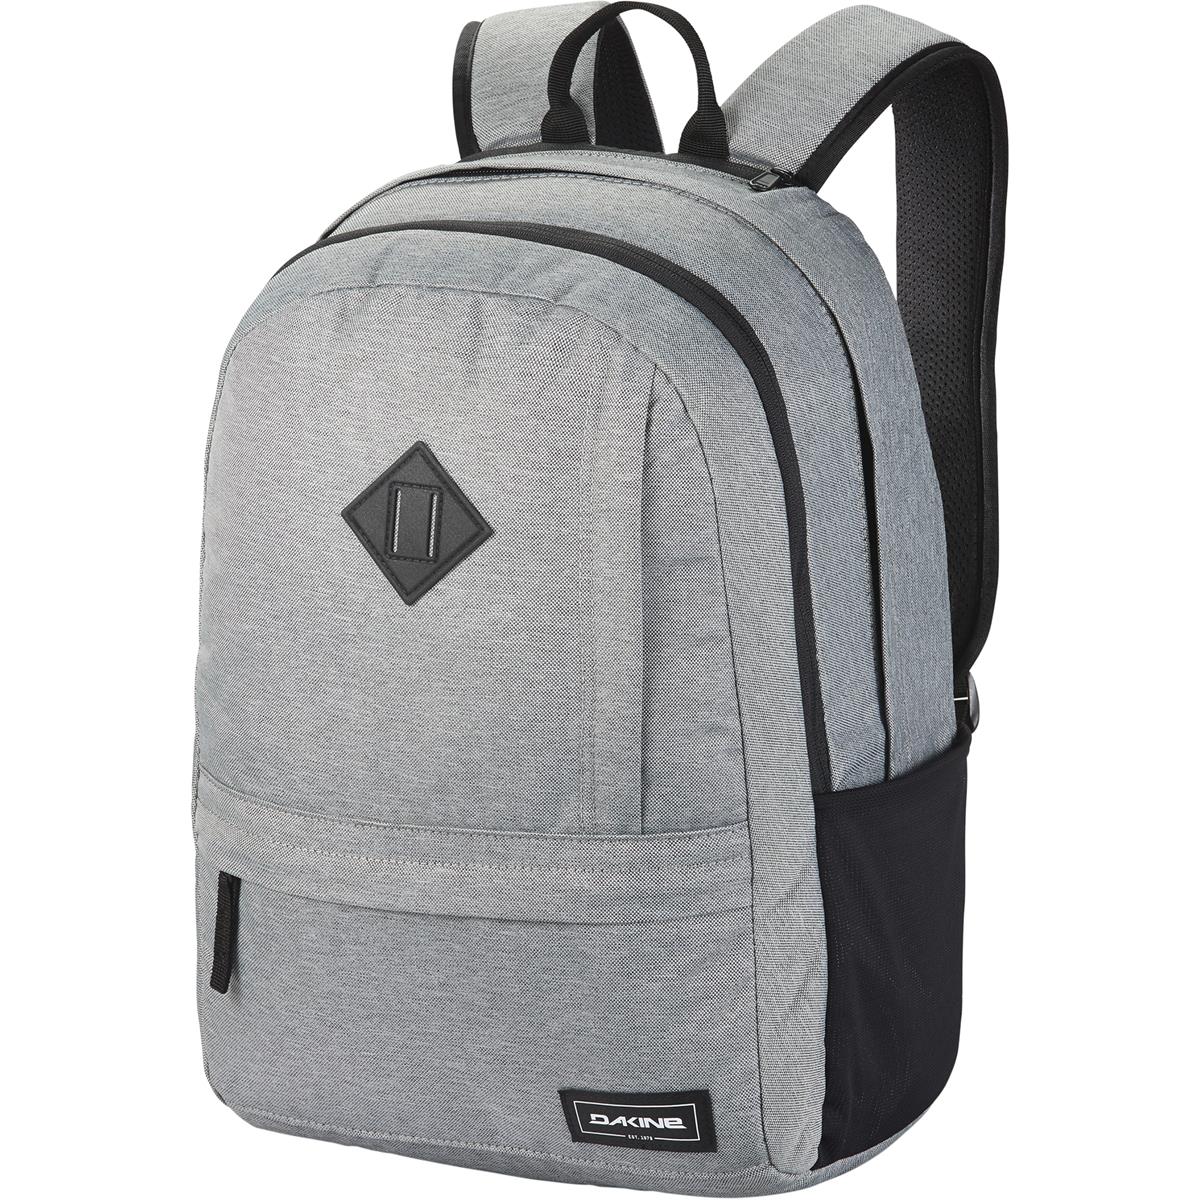 Dakine Backpack Essentials Geyser Gray